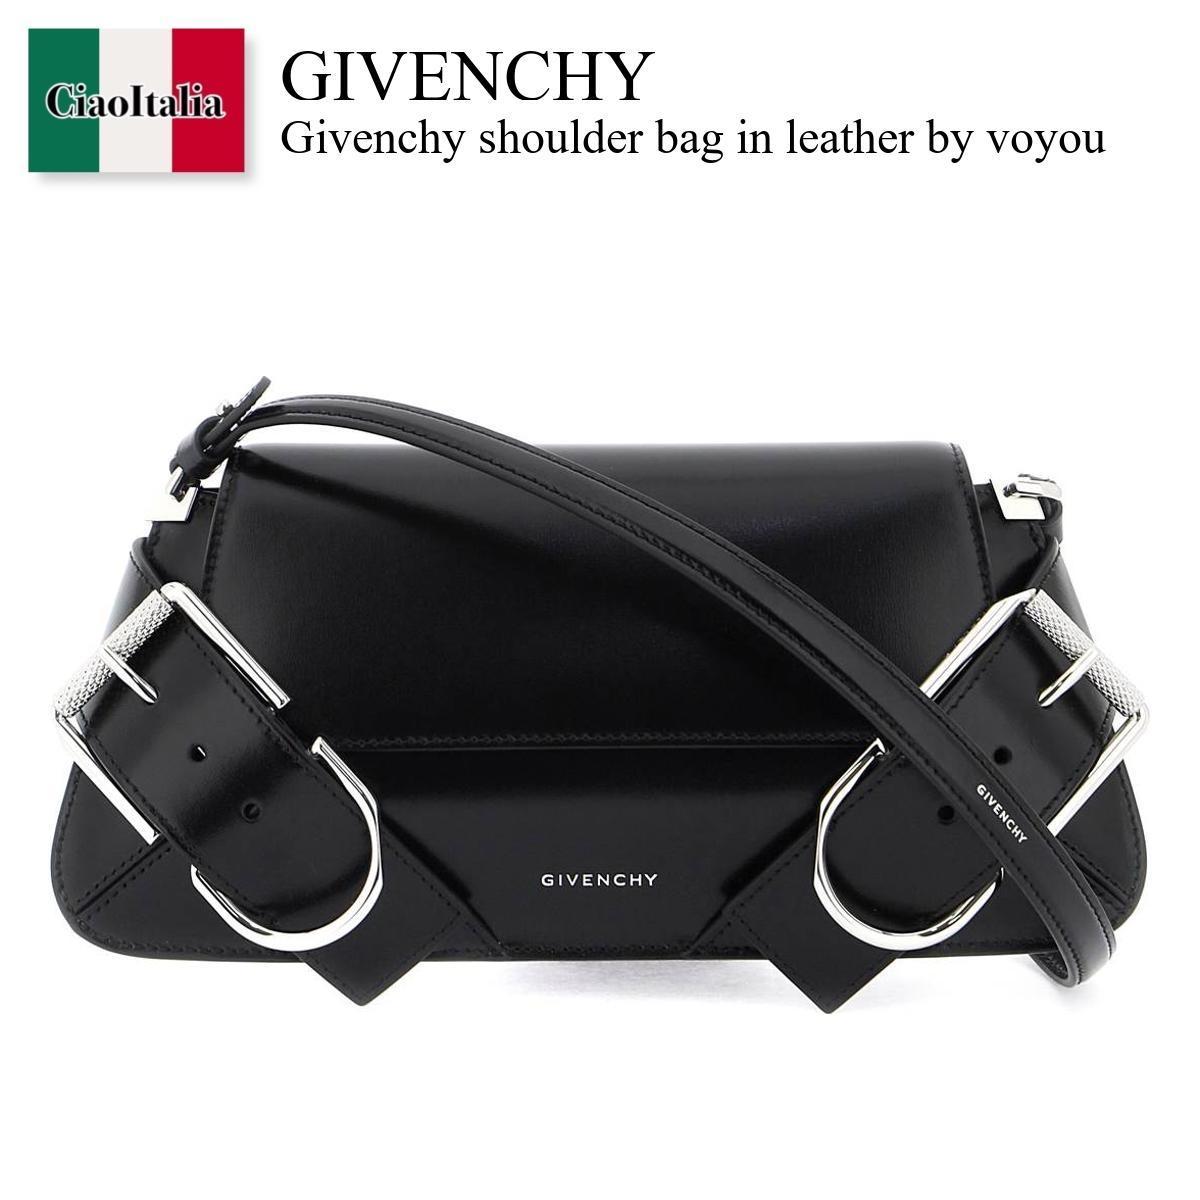 ジバンシィ ジバンシィ / Givenchy Shoulder Bag In Leather By Voyou / BB50YAB00D / BB50YAB00D 001 / BB50YAB00D001 / ショルダーバッグ・ポシェット / 「正規品補償」「VIP価格販売」「お買い物サポート」